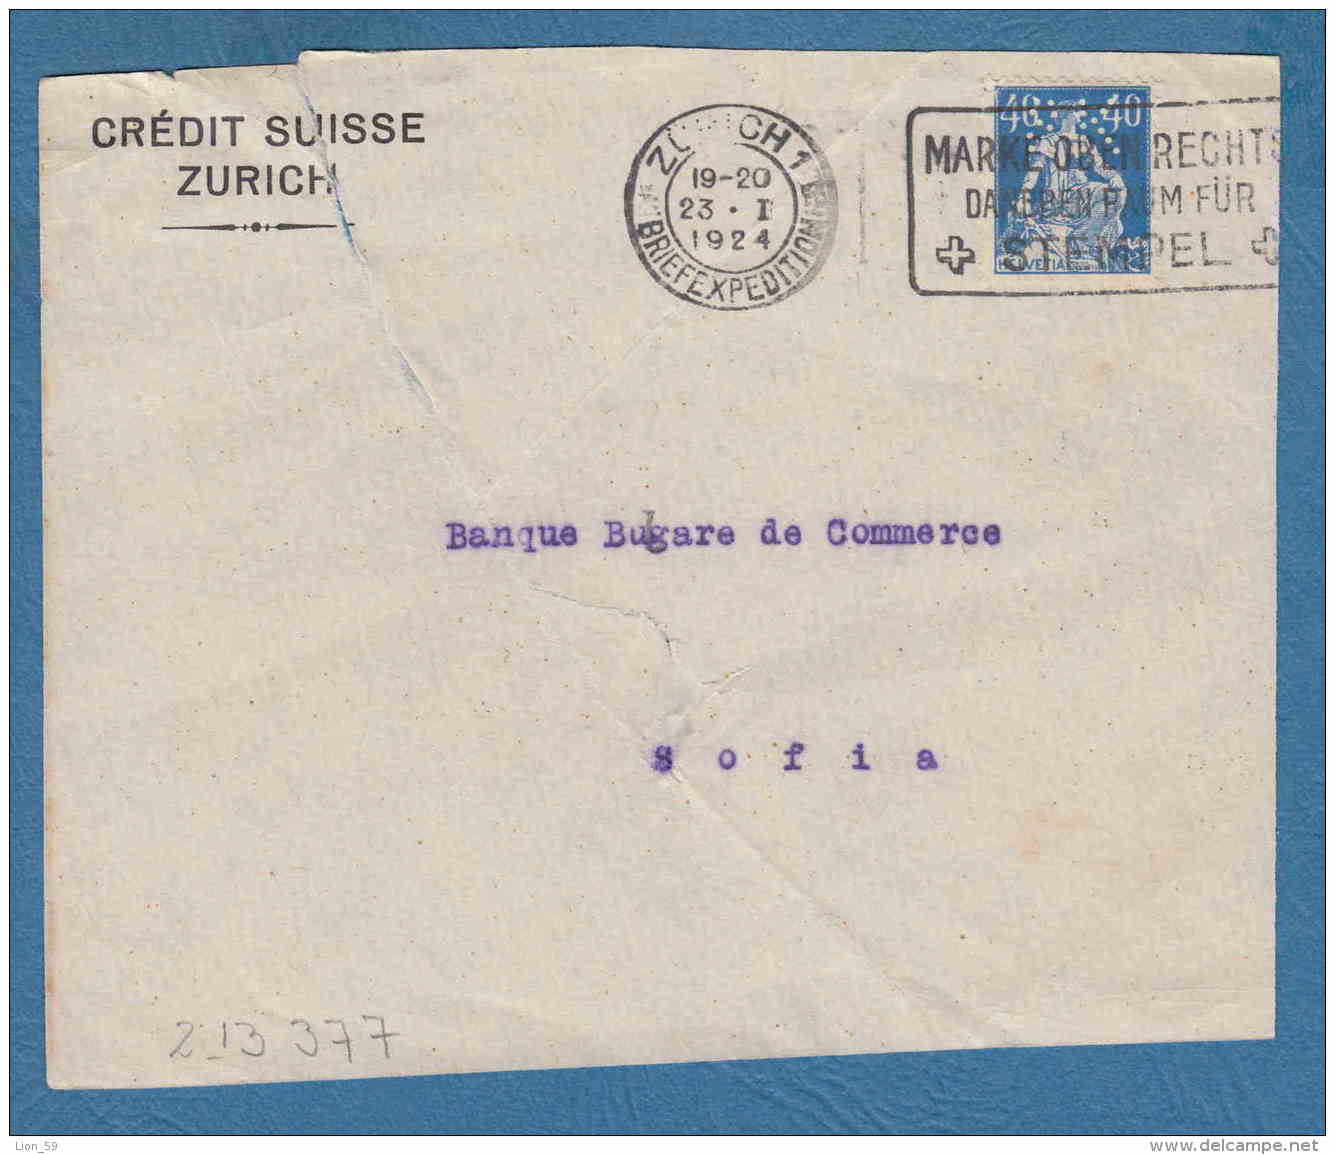 213377 / 1924 - 40 C. - CREDIT SUISSE ZURICH - Perfin Perfores Perforiert Gezähnt Perforati Switzerland Suisse Schweiz - Perforadas